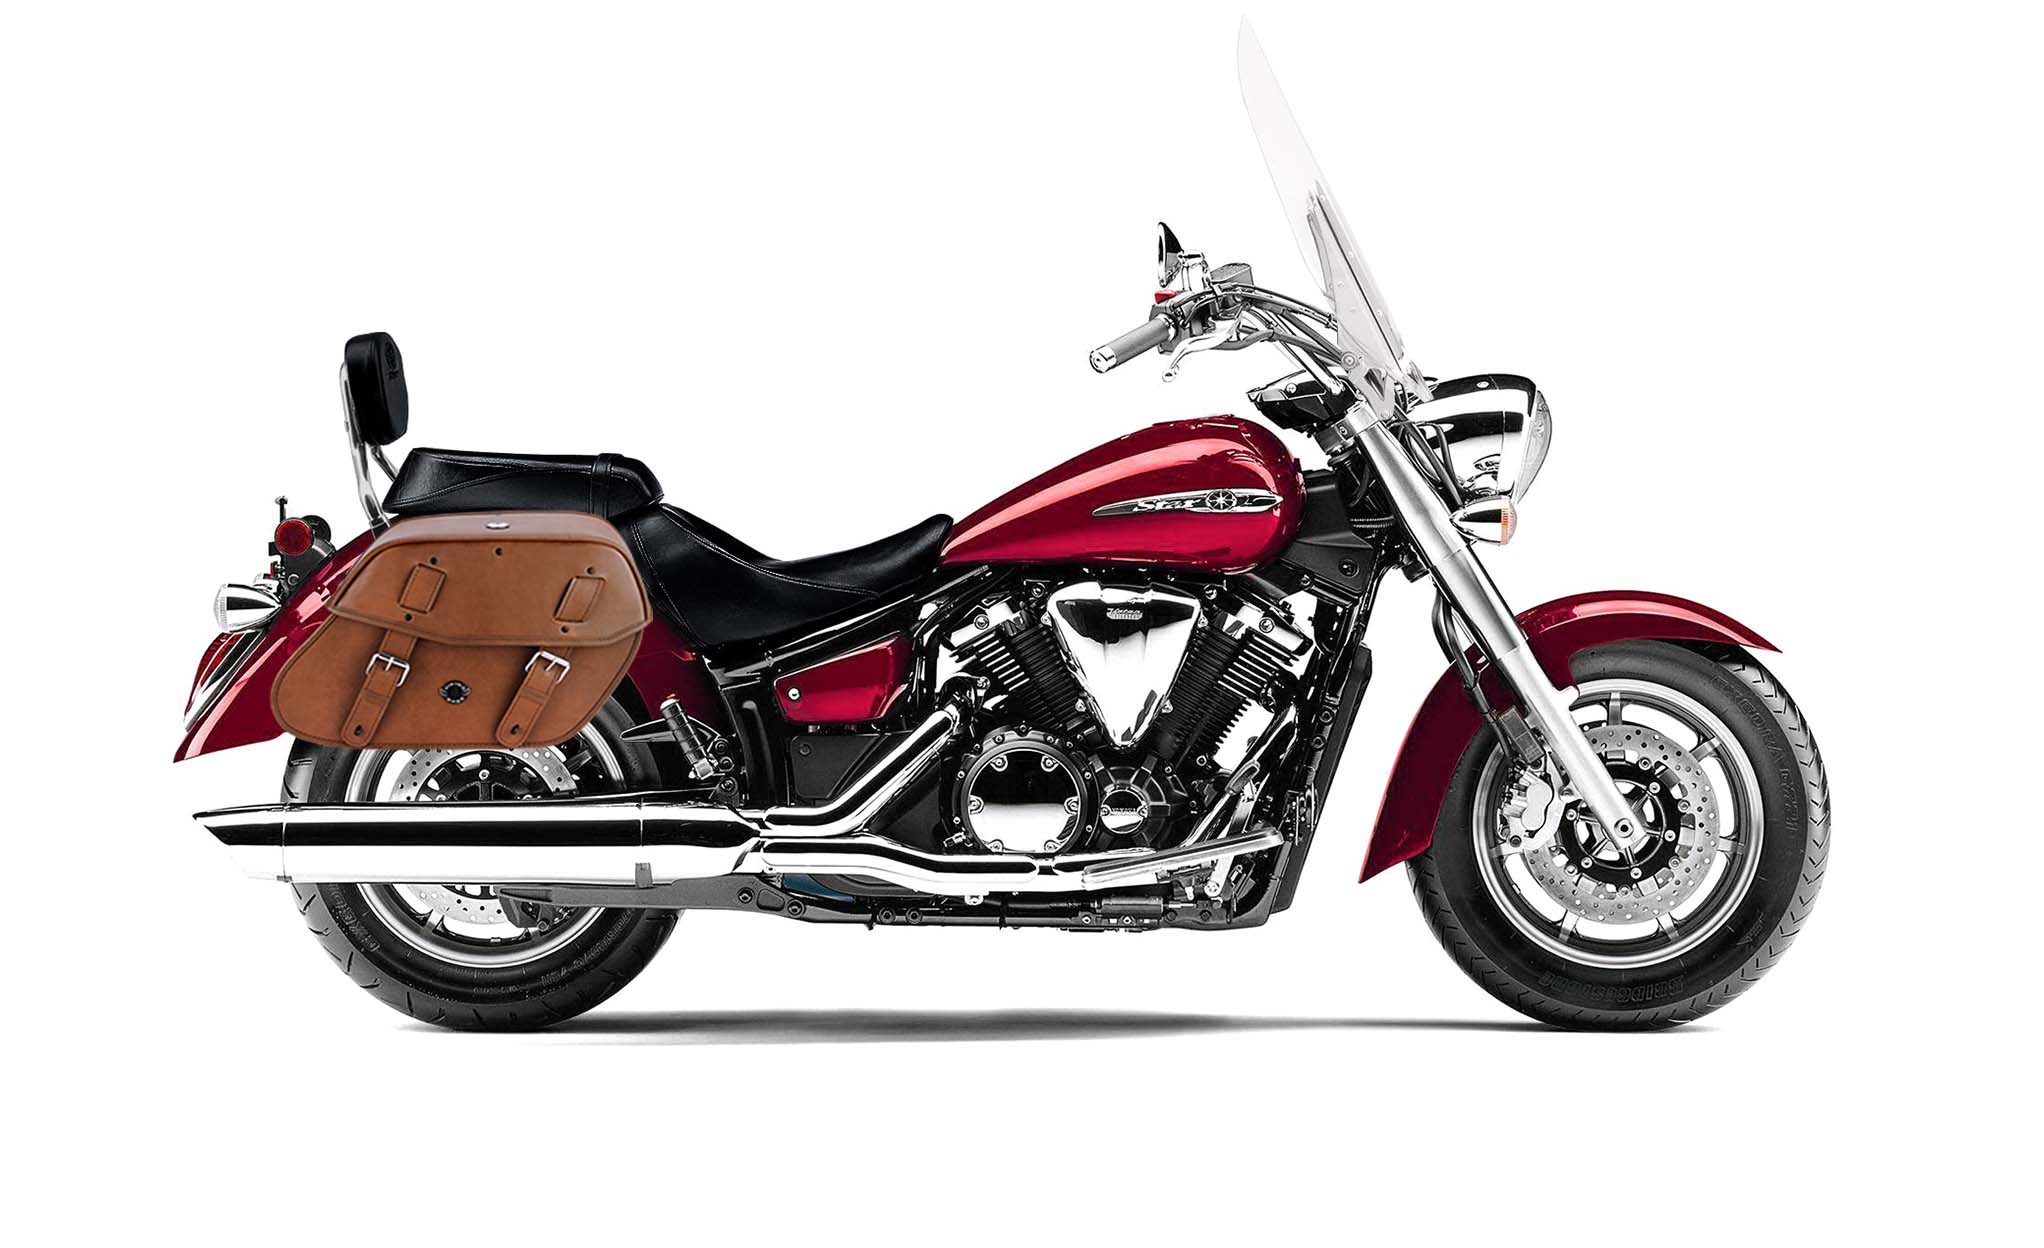 Viking Odin Brown Large Yamaha V Star 1300 Tourer Leather Motorcycle Saddlebags on Bike Photo @expand